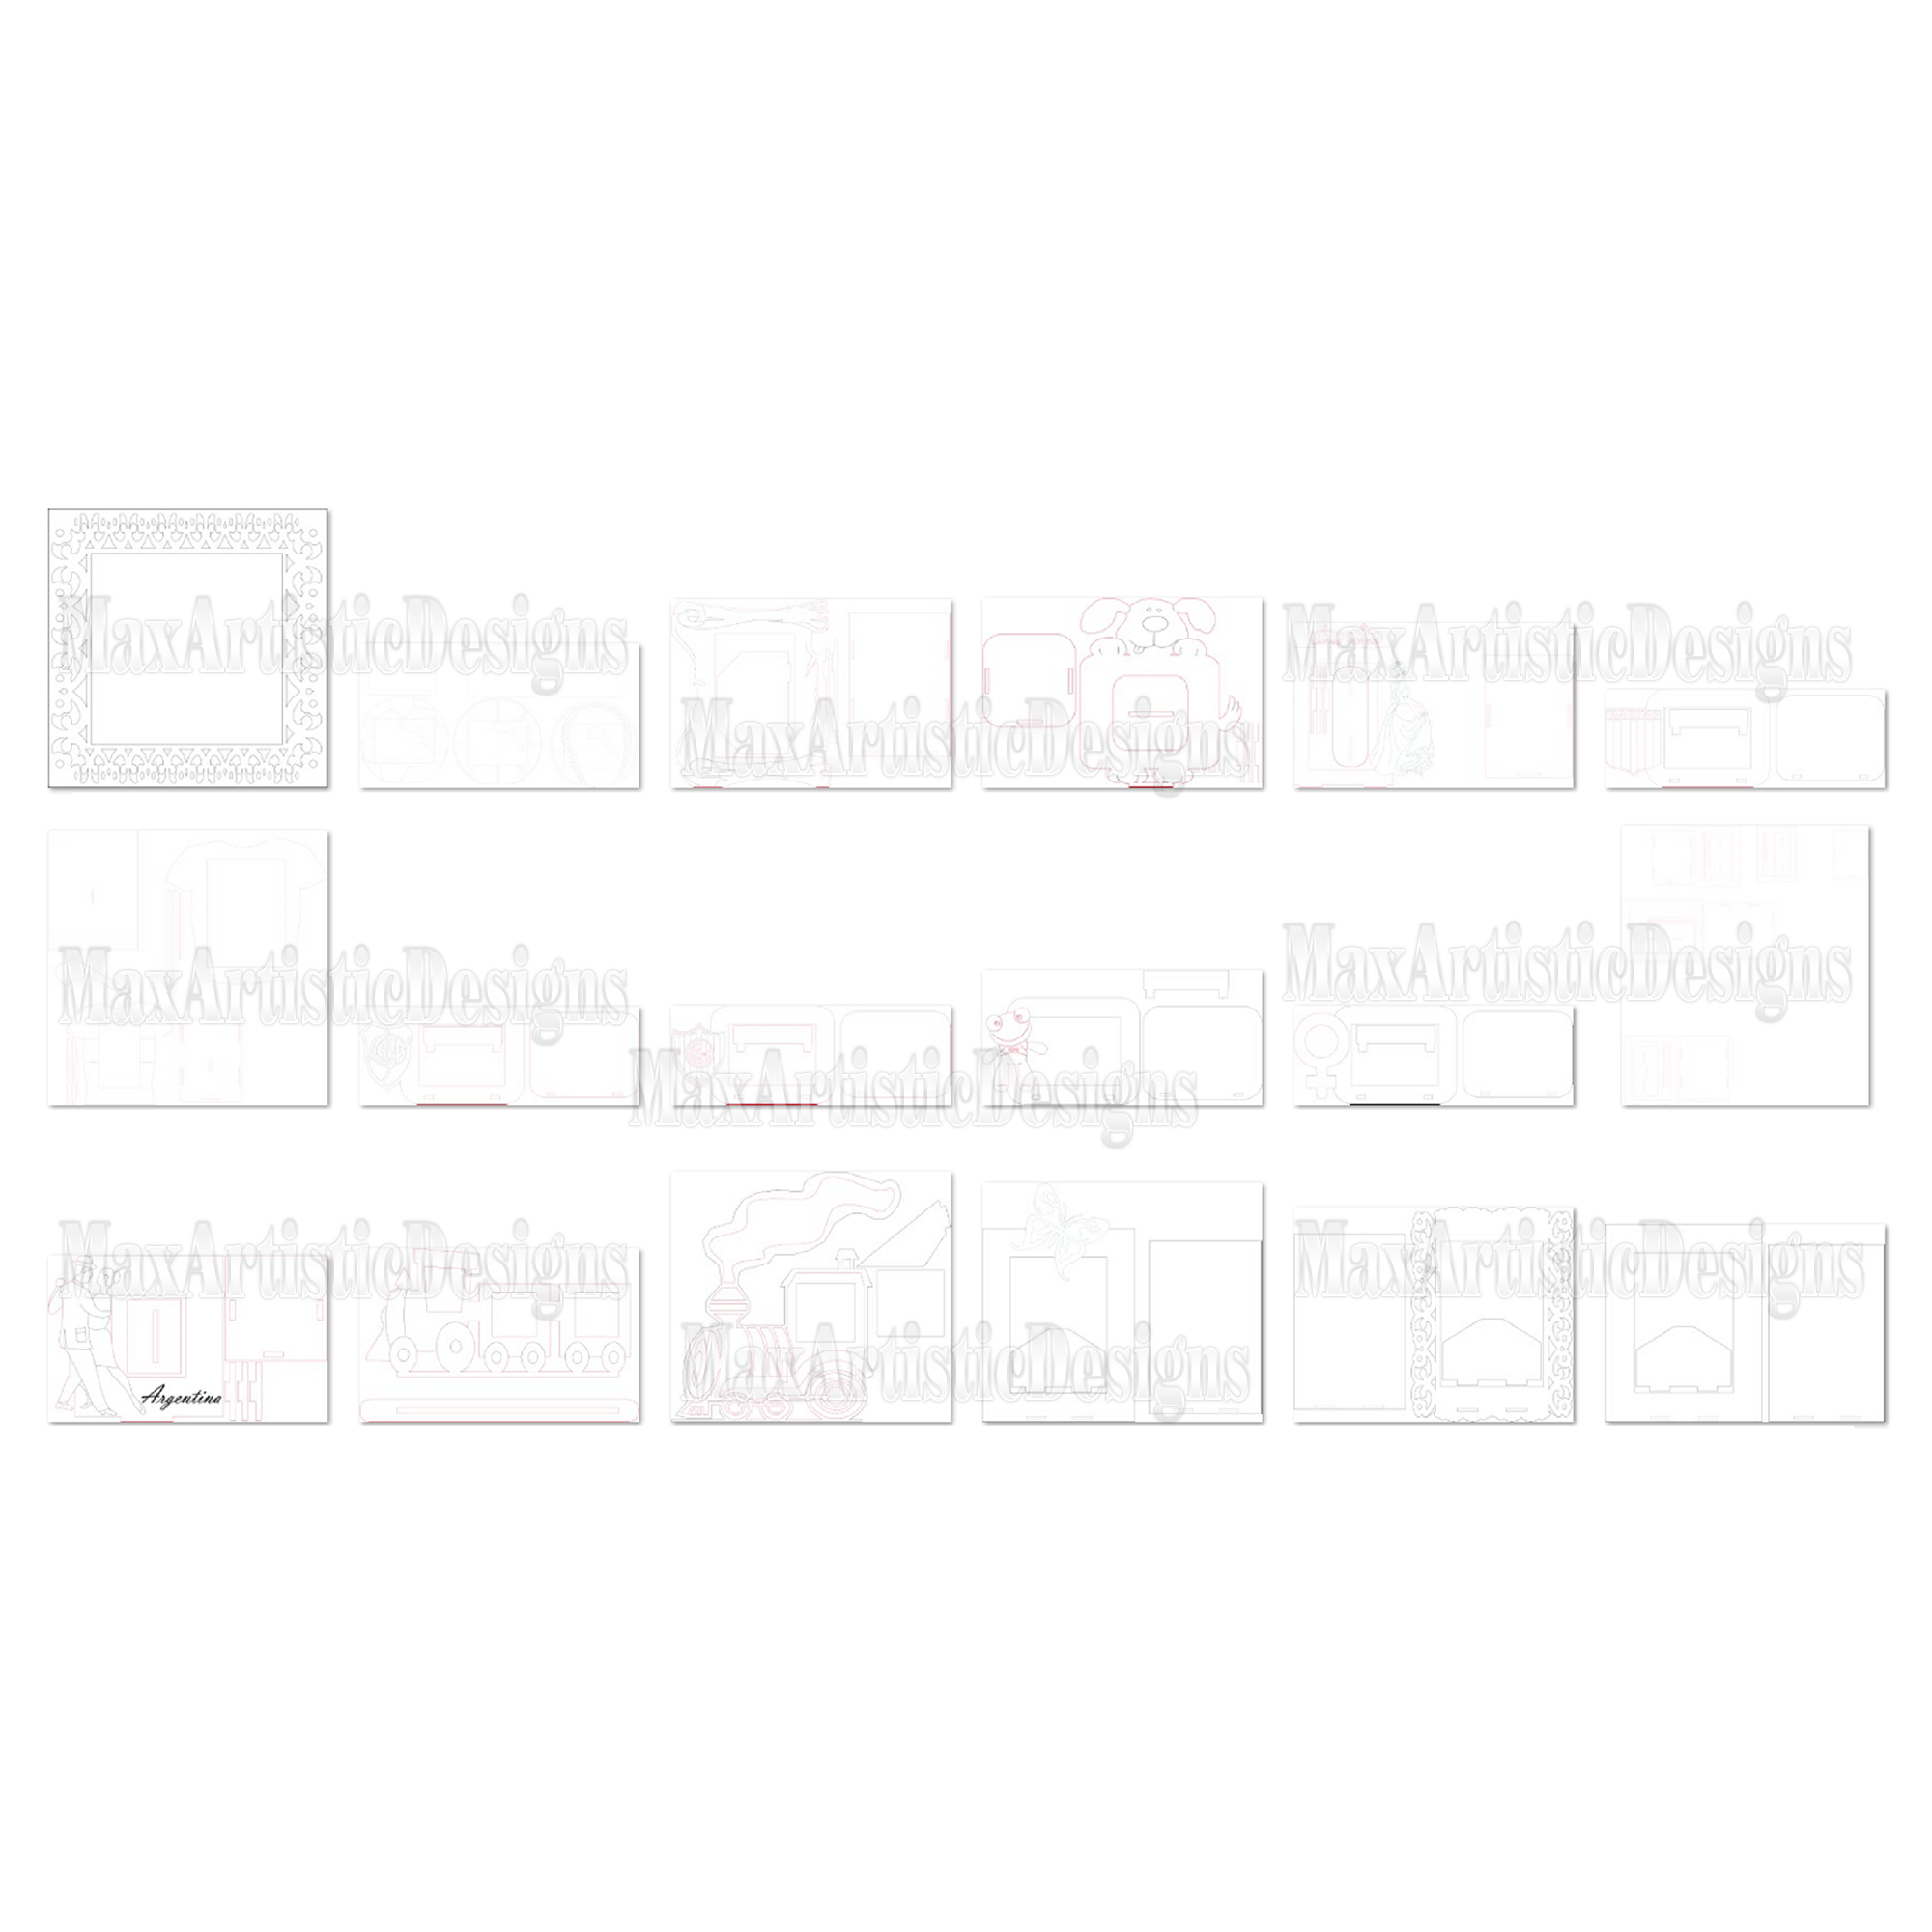 Pacchetto di vettori cnc 292x cornici per ritratti in formato SVG per feste, plasma, taglio laser, download di router cnc